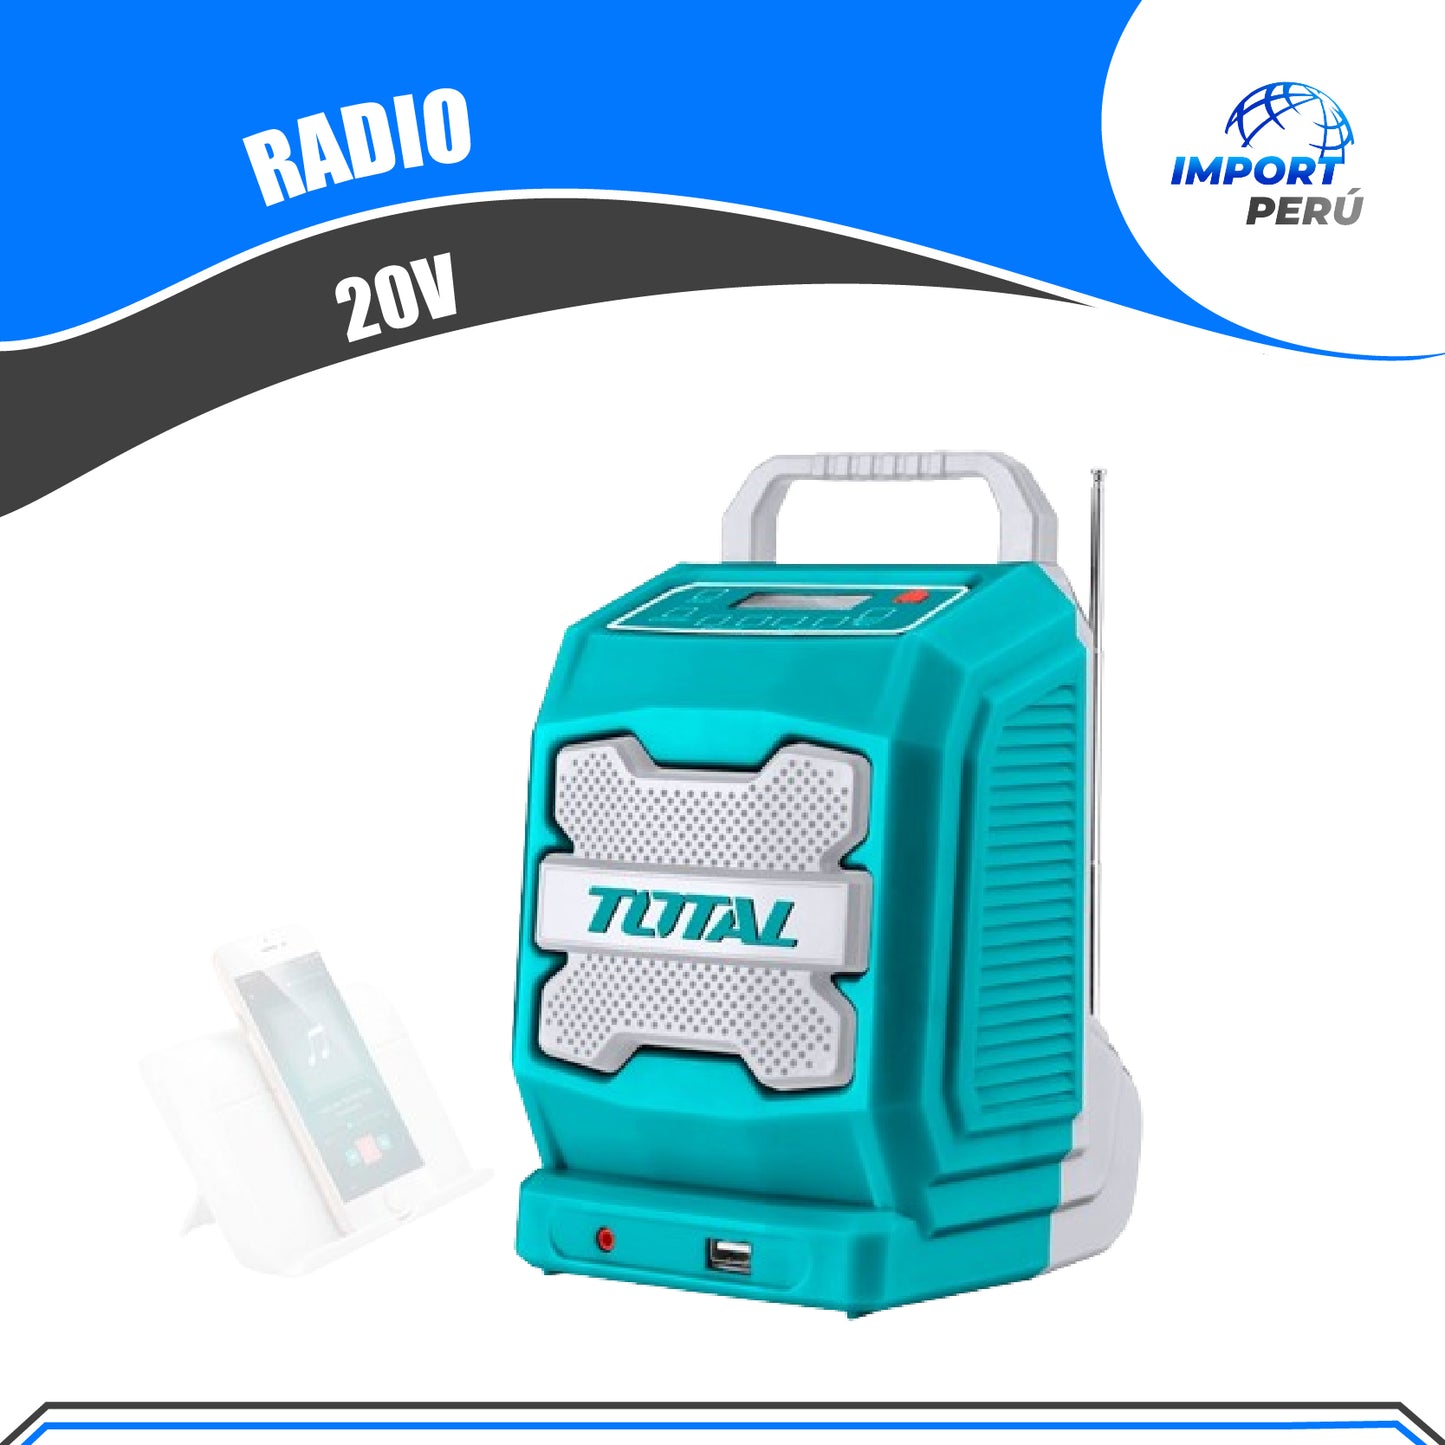 Radio 20V